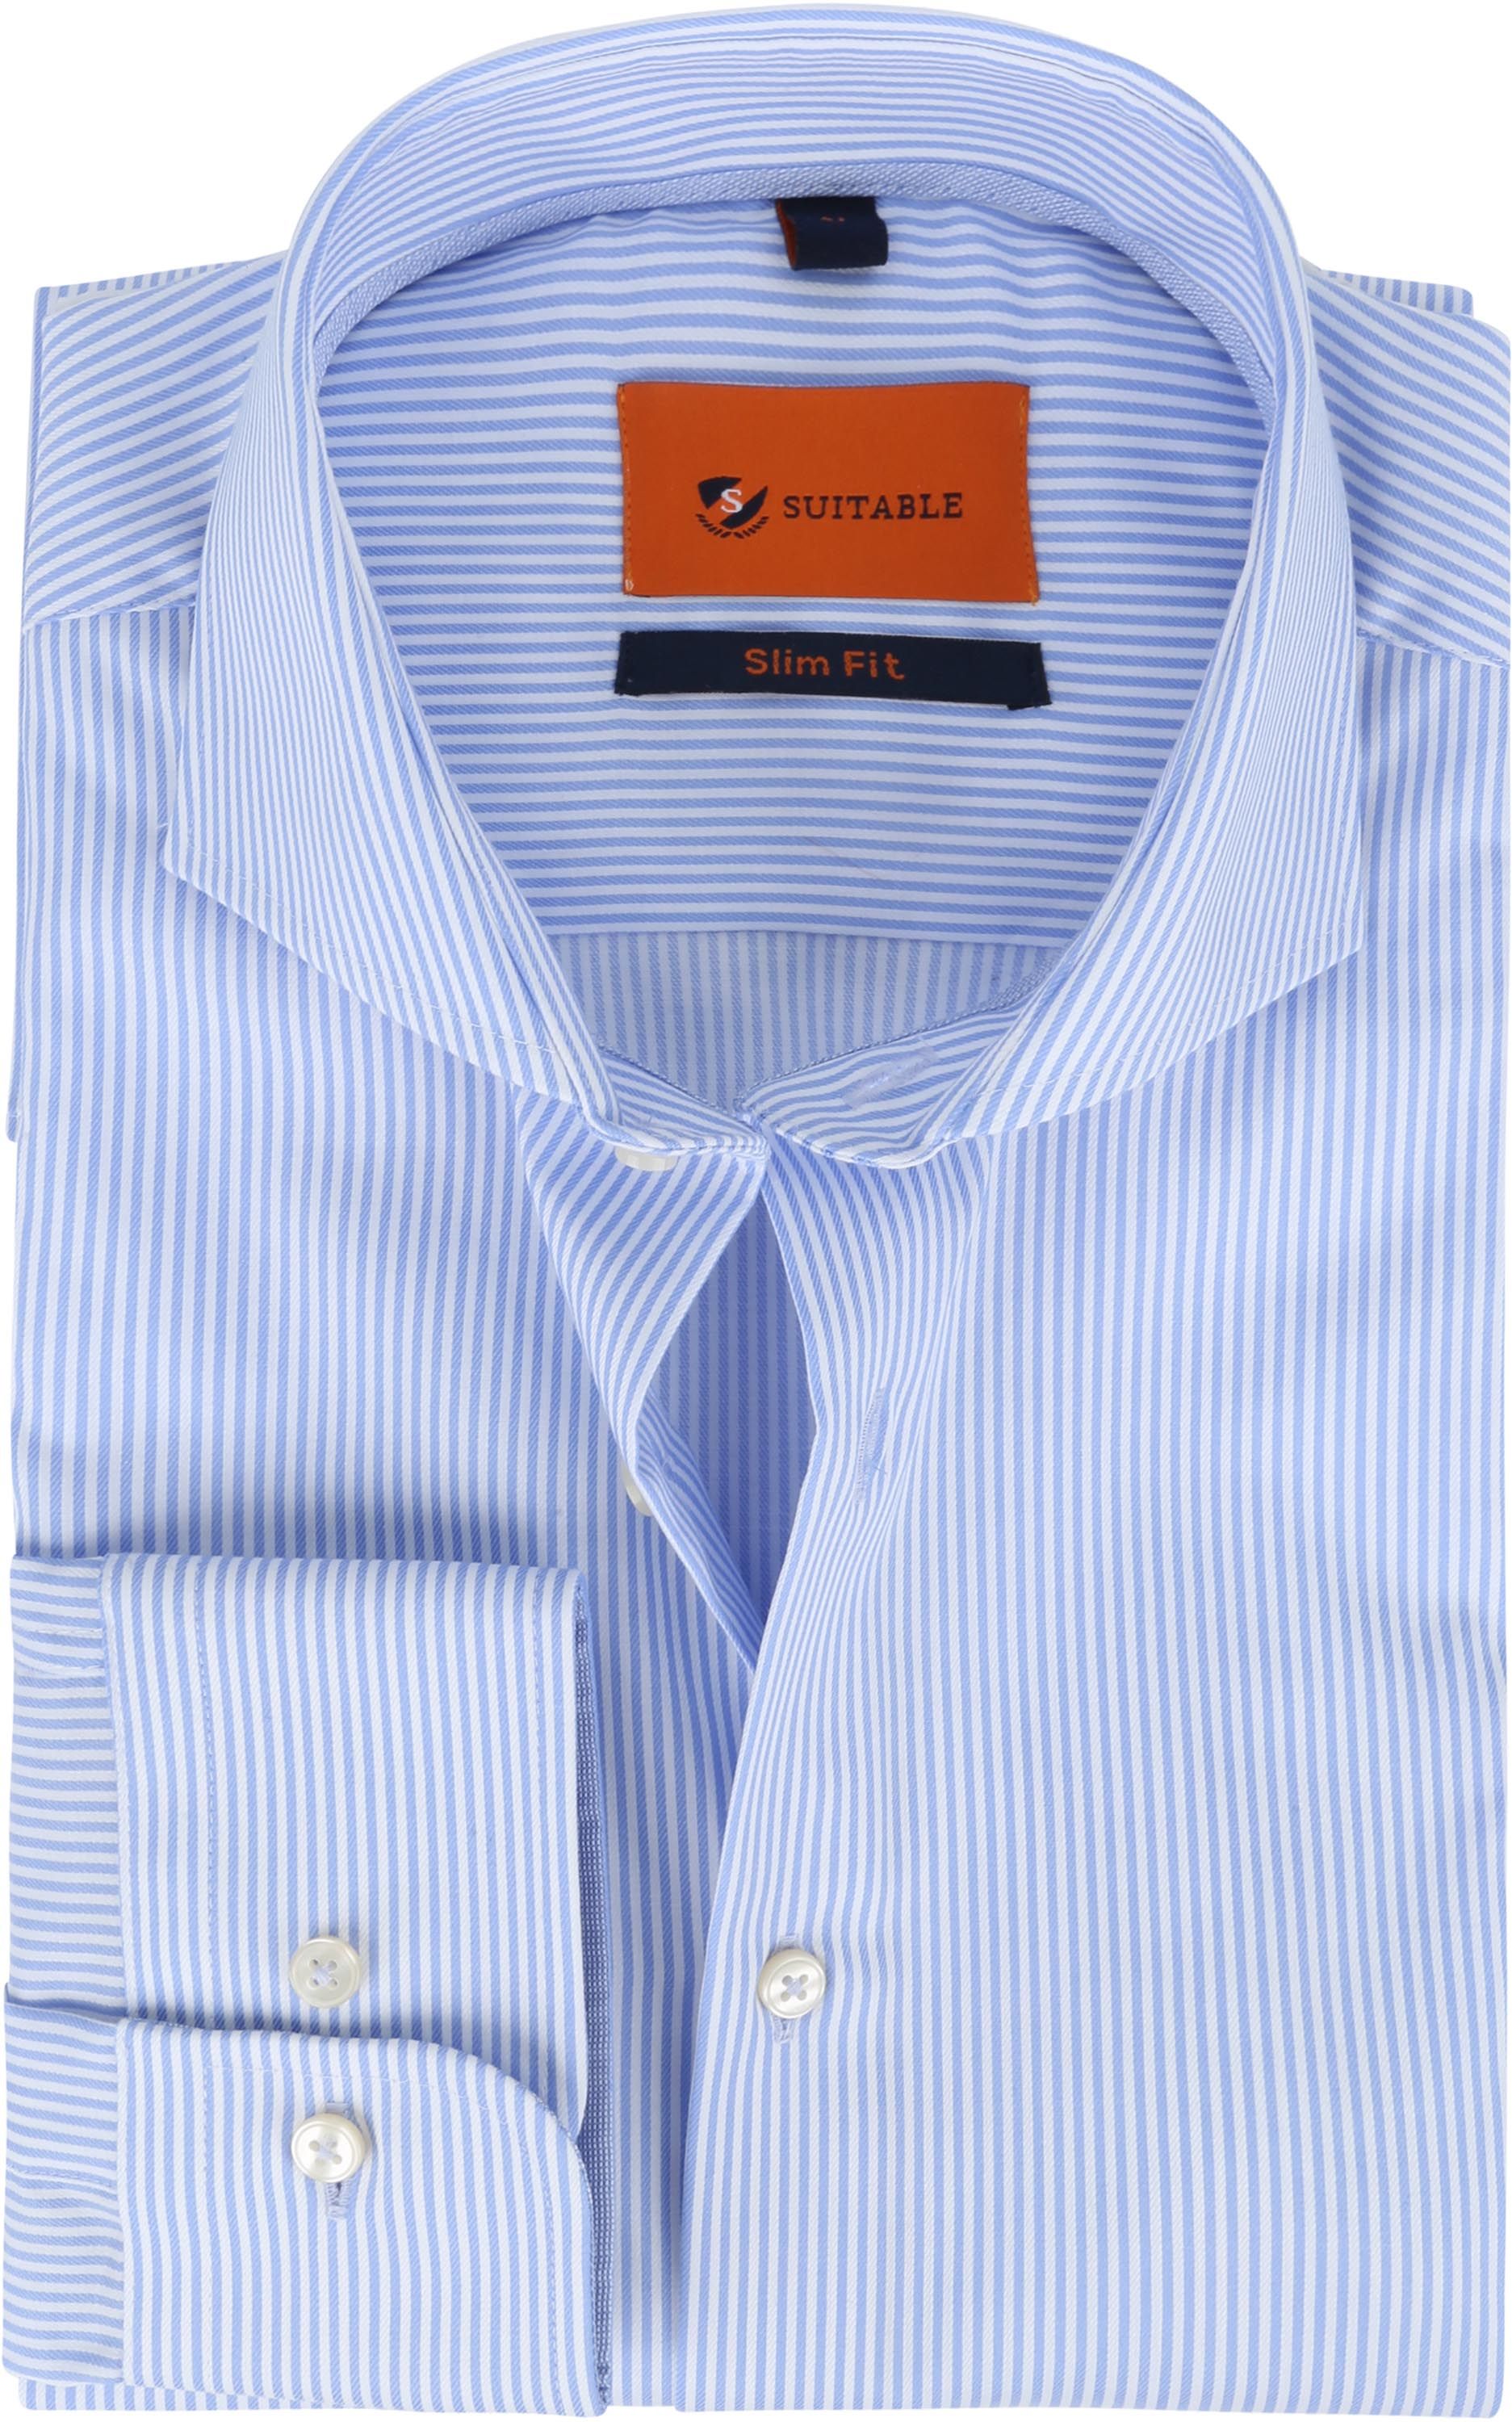 Suitable Shirt Stripes Light Blue size 15 3/4